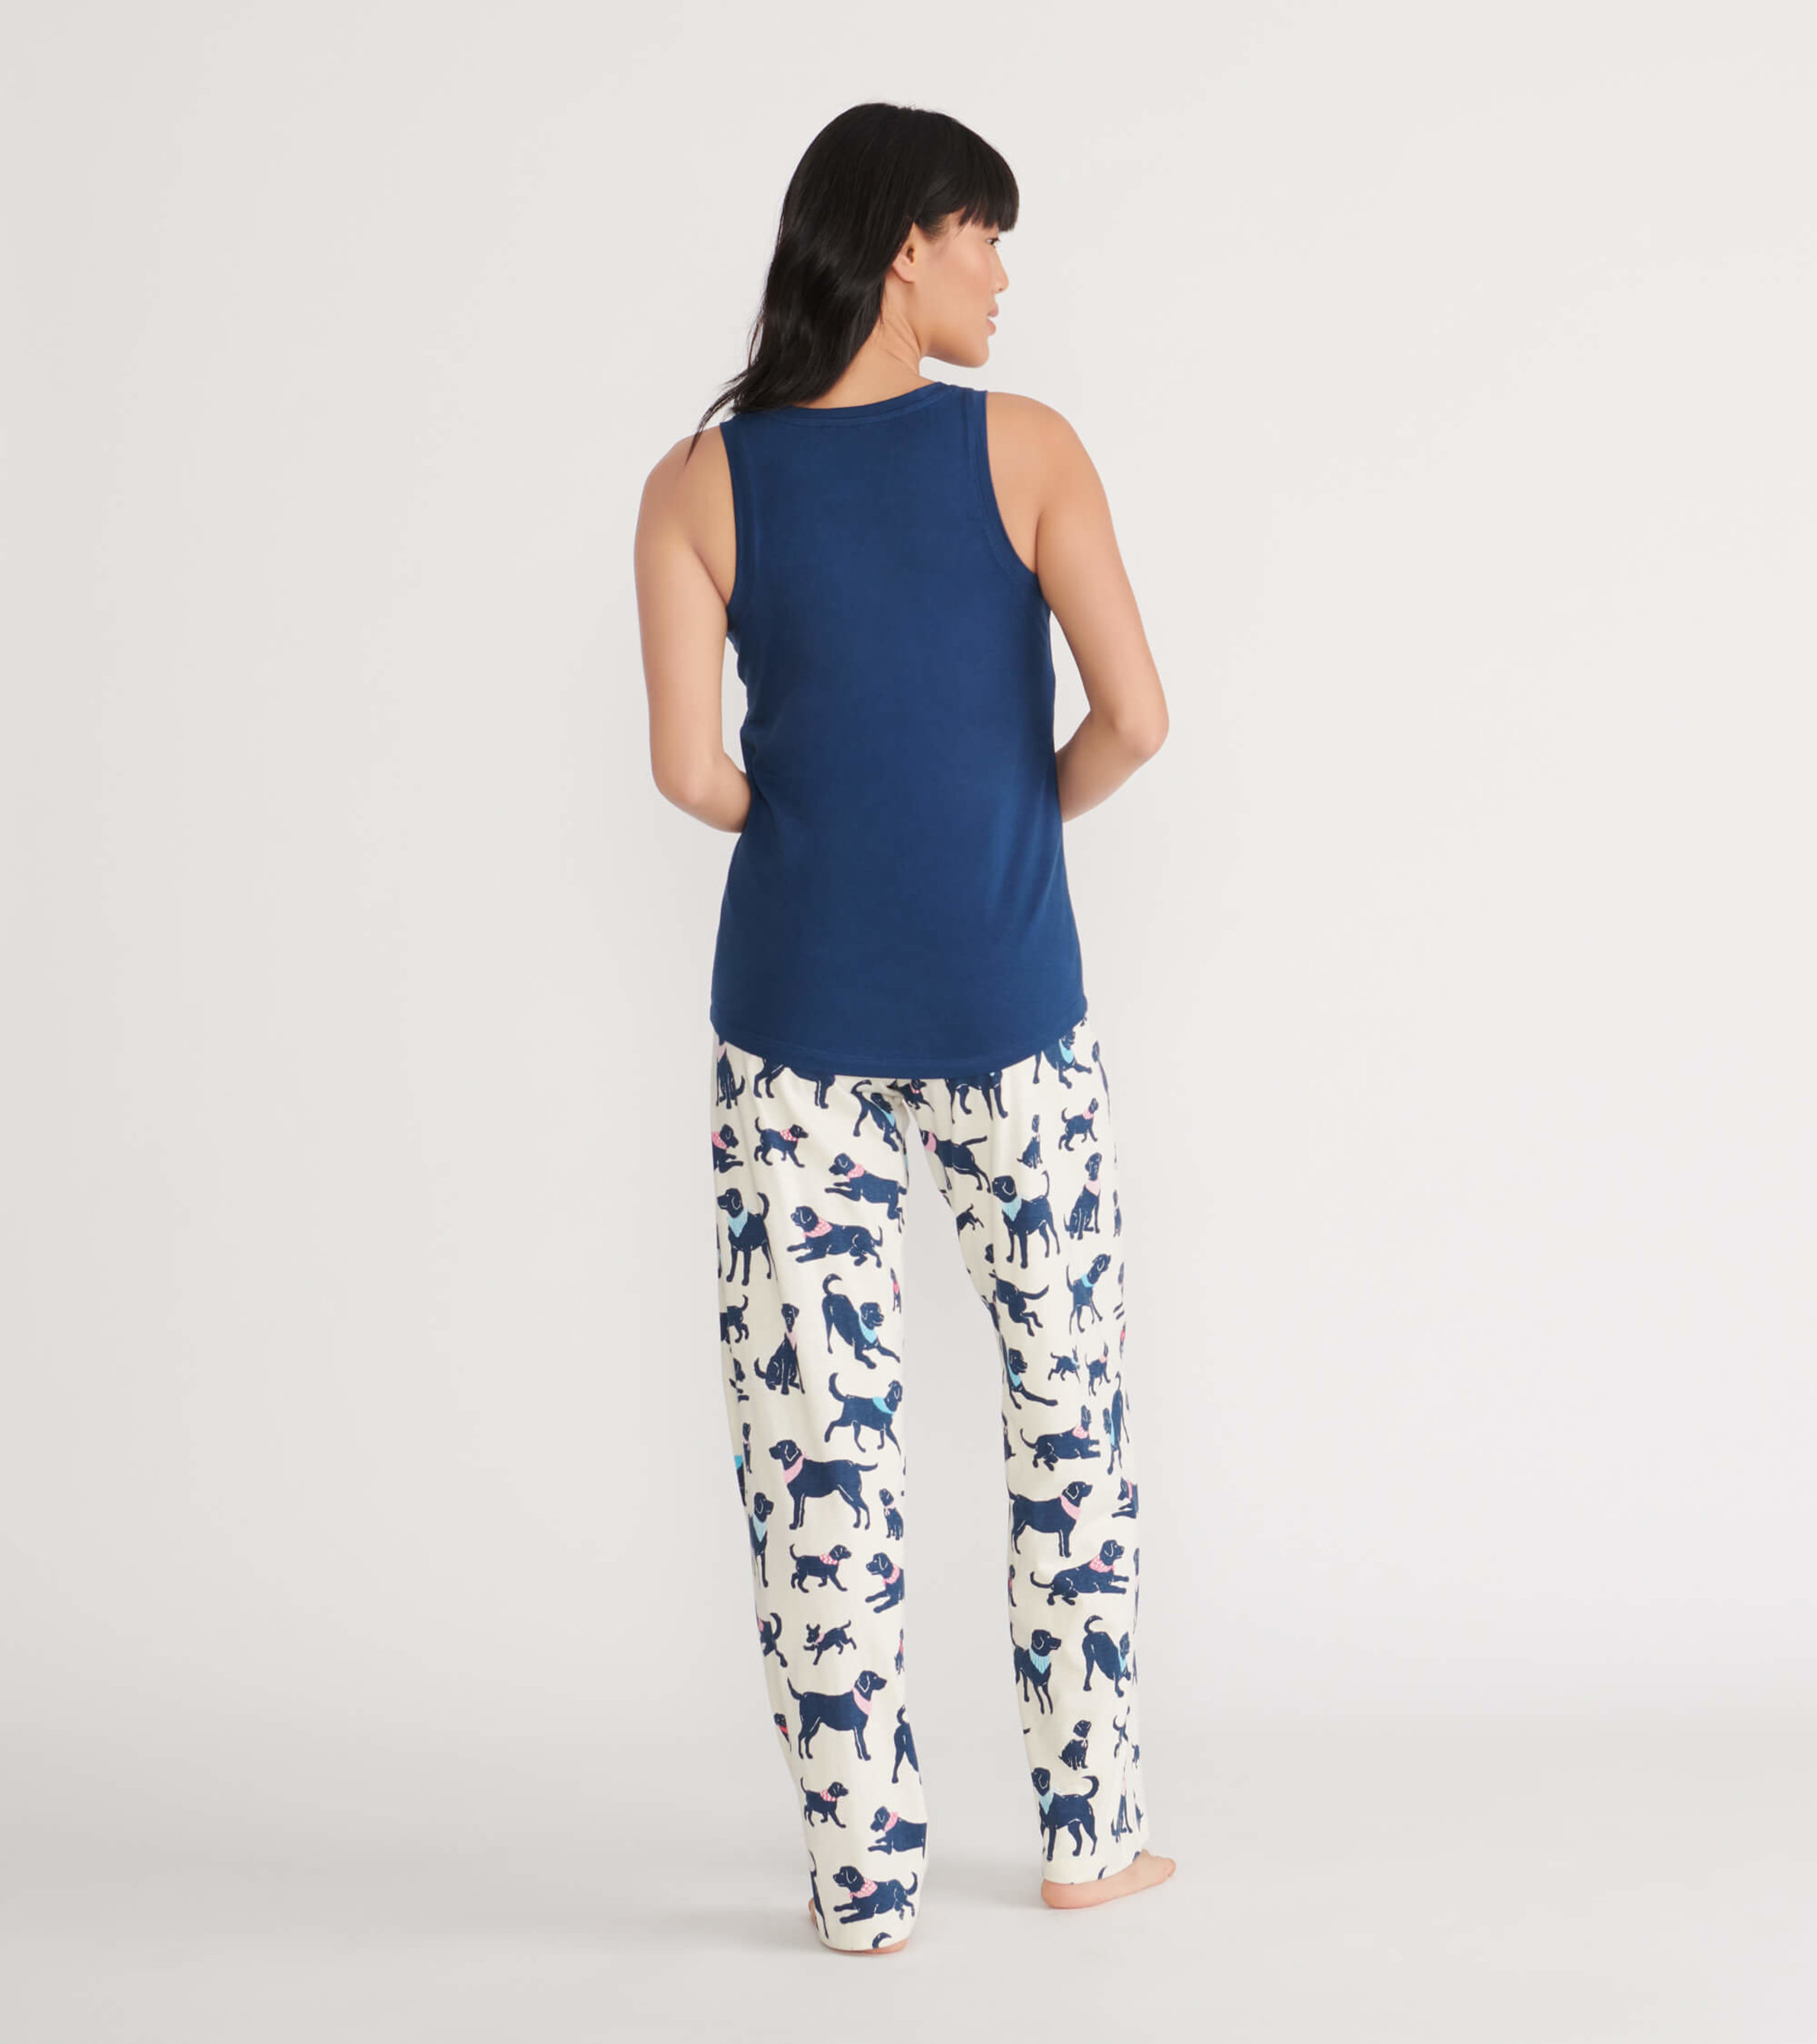 Pajama Pants and Tank Top - Dark blue/Patterned - Ladies